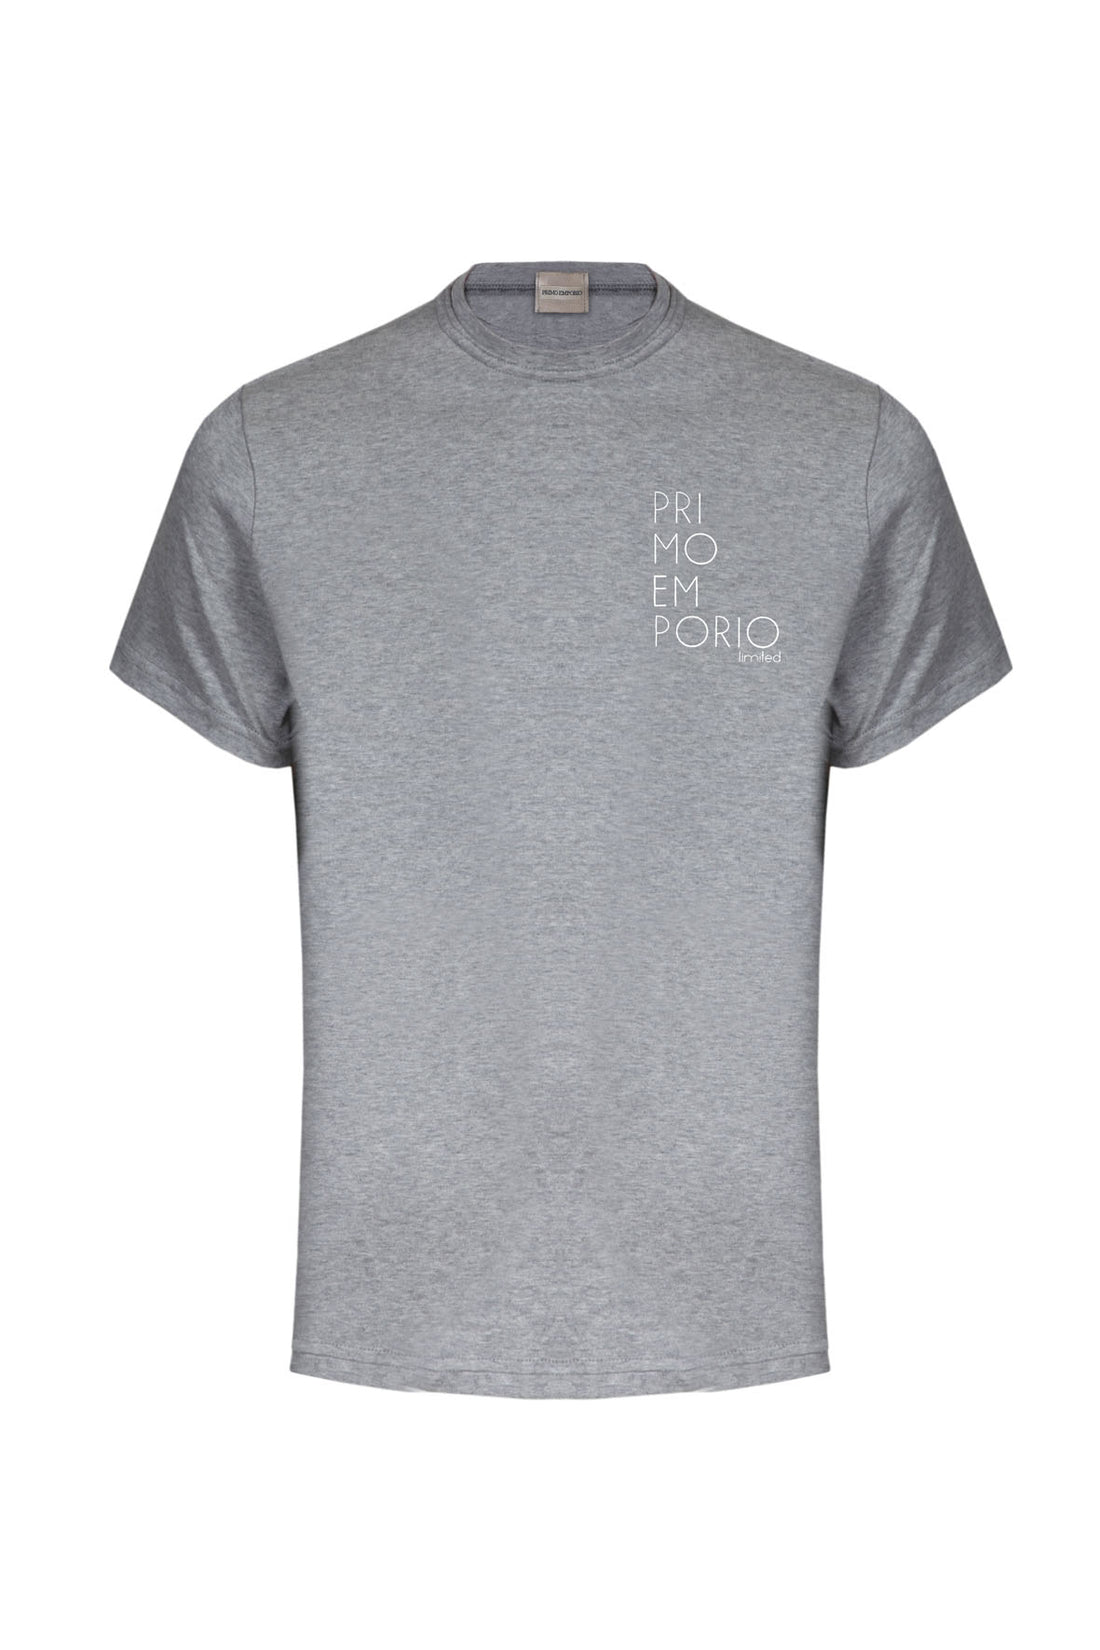 T-Shirt Elastica con Stampa Petto Primo Emporio - Grigio